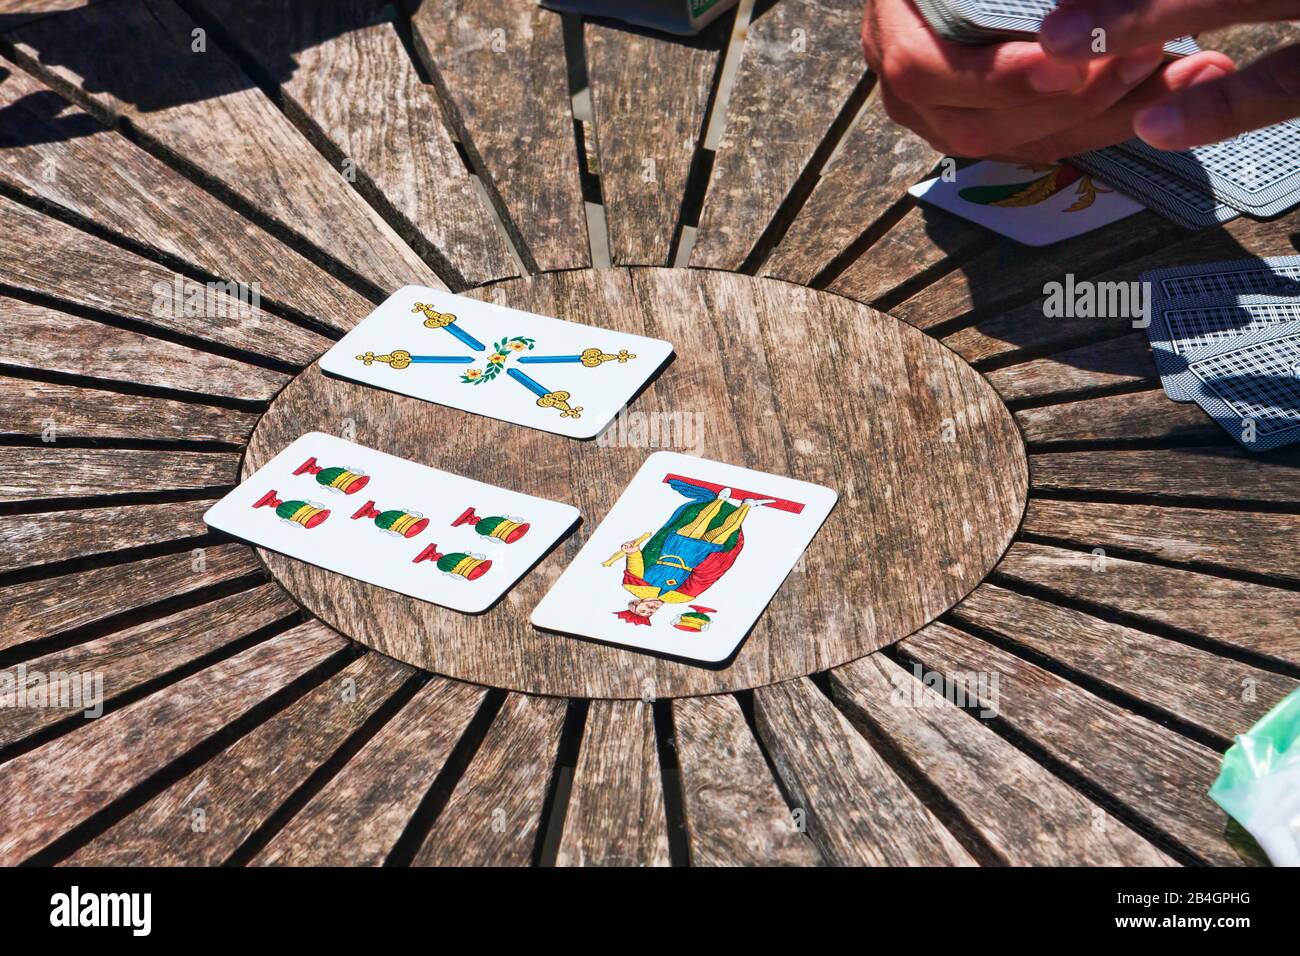 Turin, Italien - 15. Mai 2014: Während der Kaffeepause spielen die Mitarbeiter Trump auf einem runden Holztisch, die Menschen genießen traditionelle neapolitanische Karten. Stockfoto